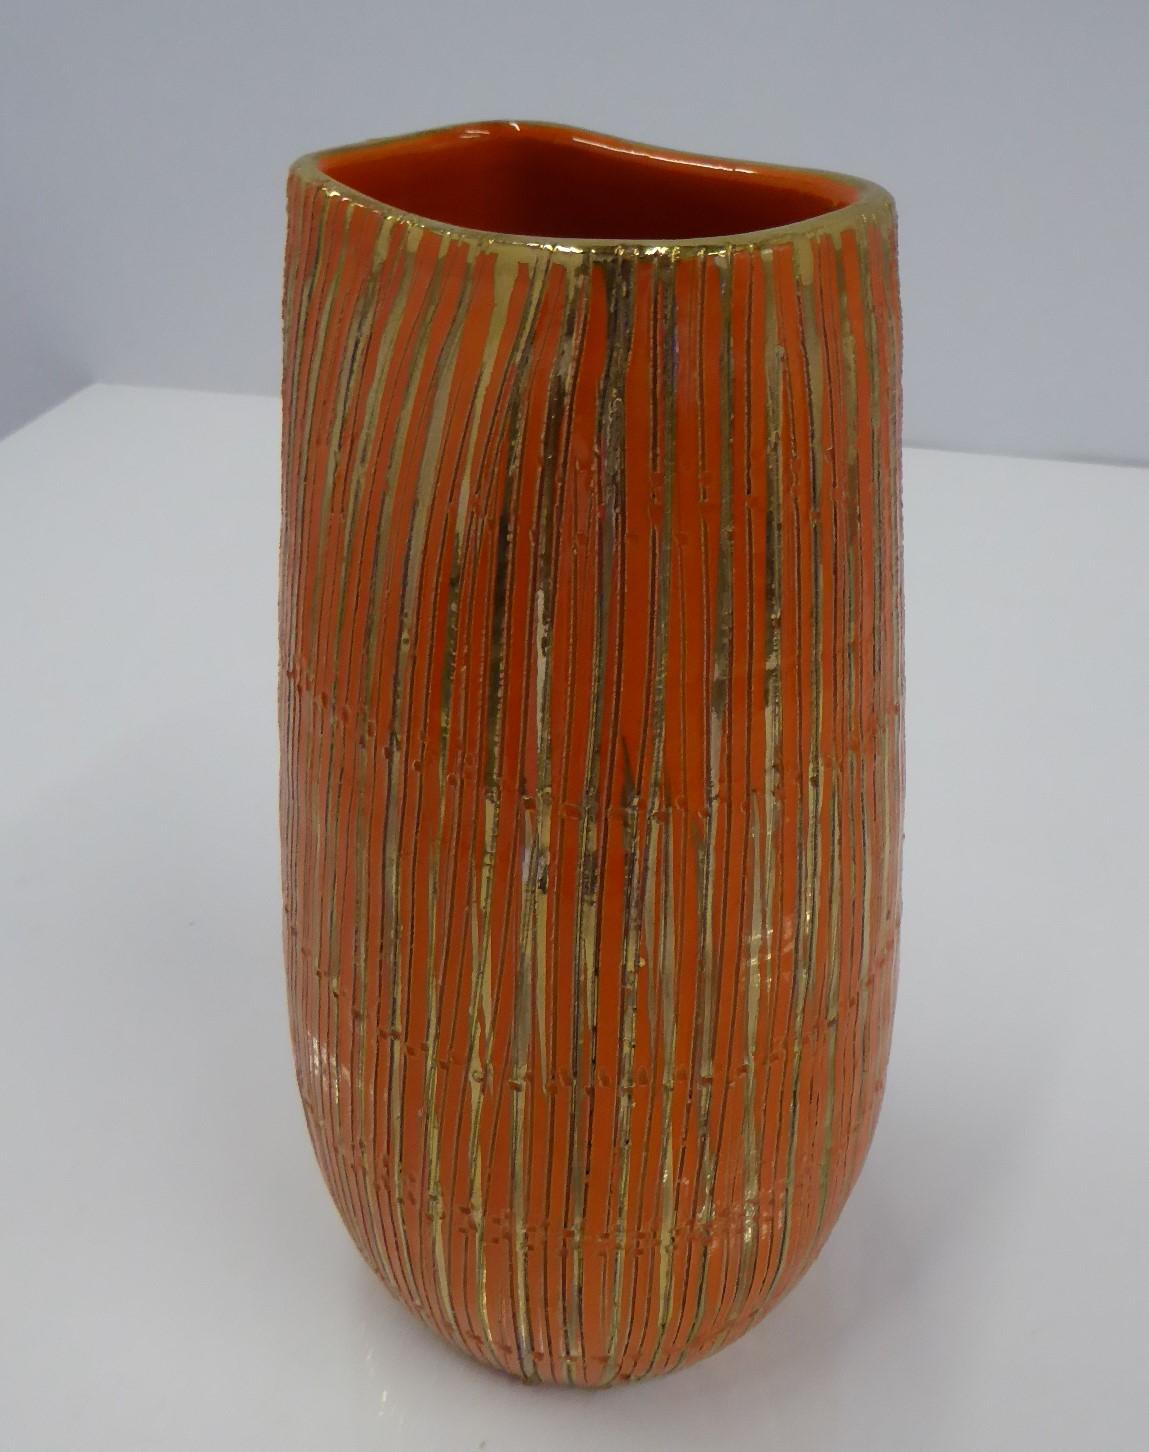 Aldo Londi Seta Series for Bitossi Modern Sgraffito Ceramic Vase, Italy, 1950s For Sale 2